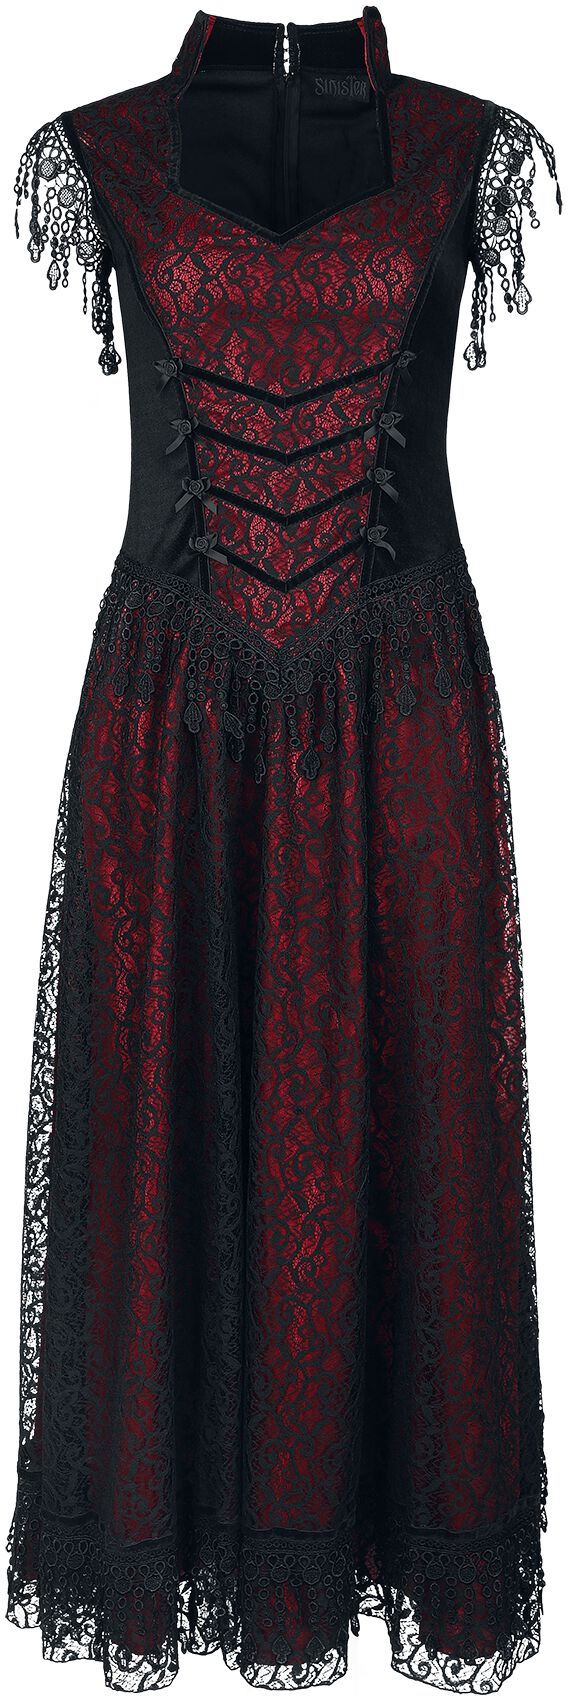 Sinister Gothic Gothic Dress Langes Kleid schwarz rot in S